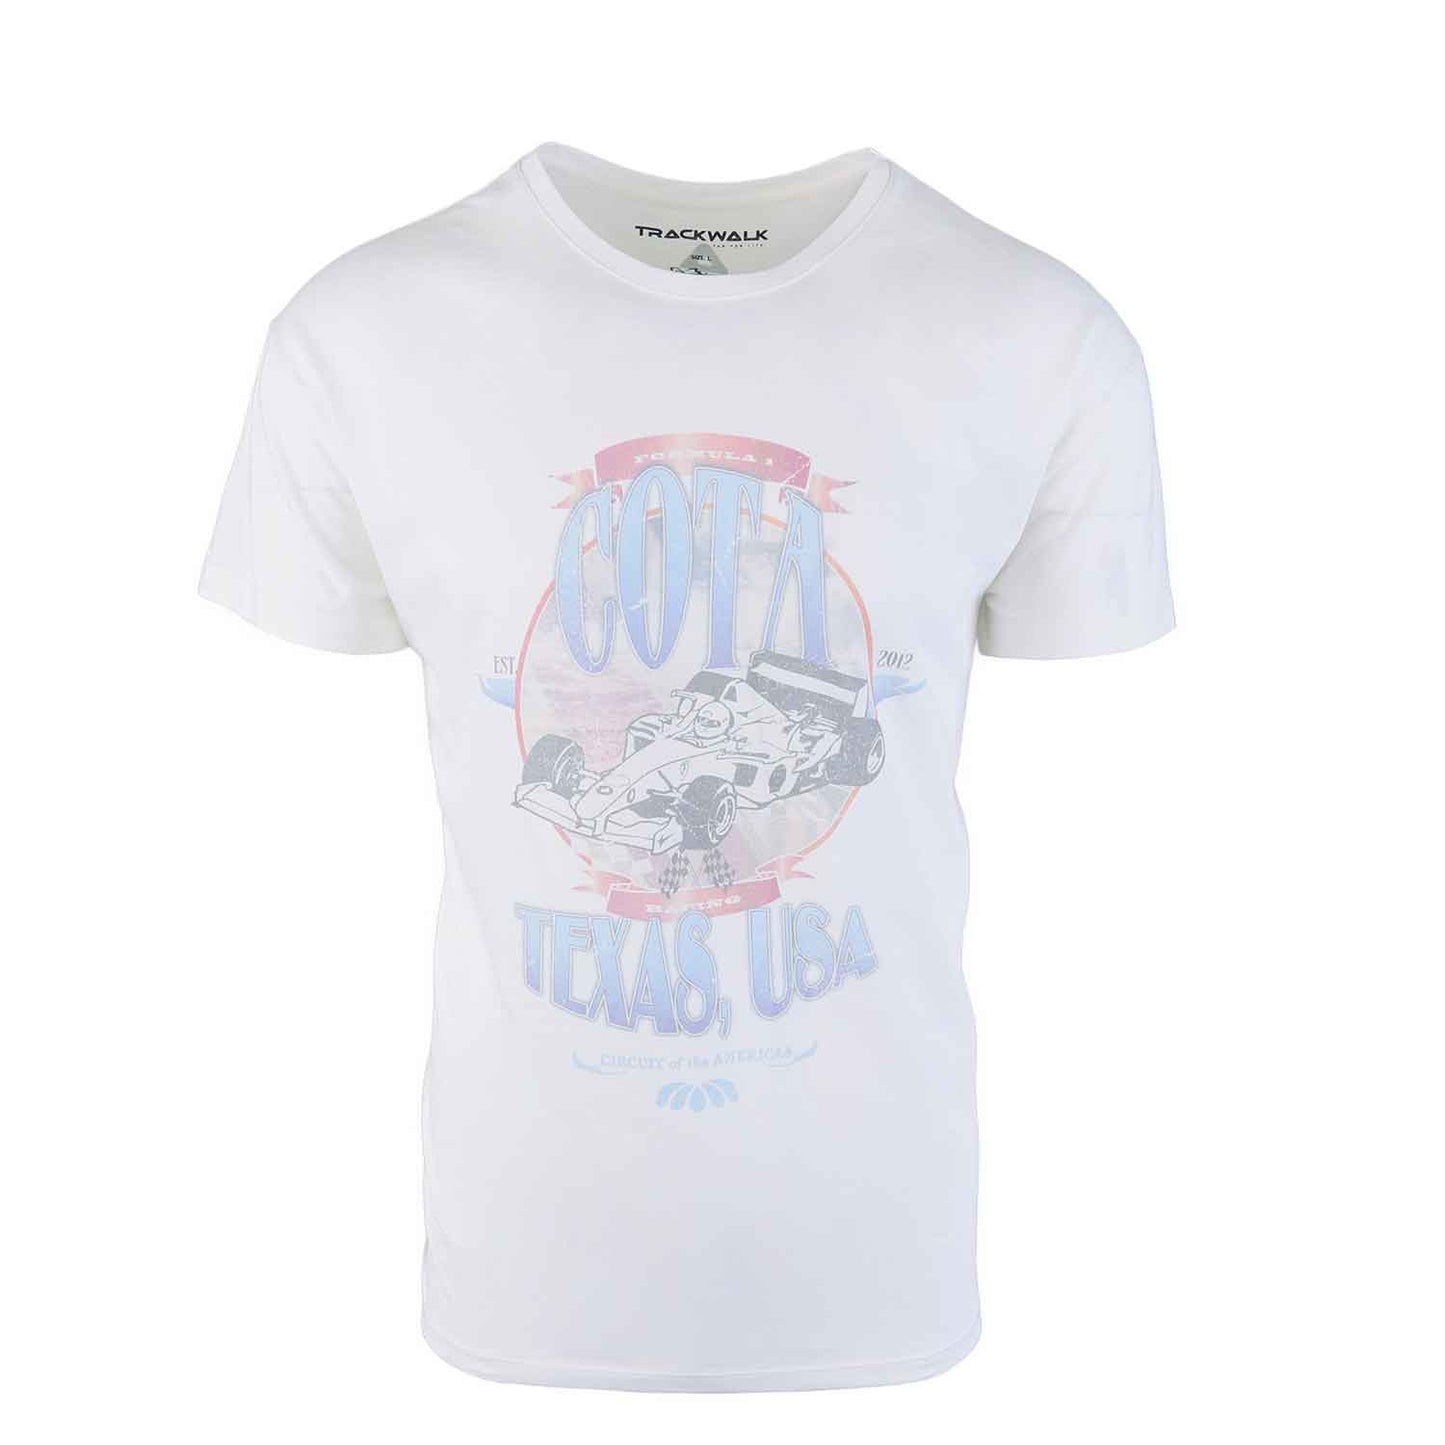 Heren T-shirt ‘Cota Texas USA’